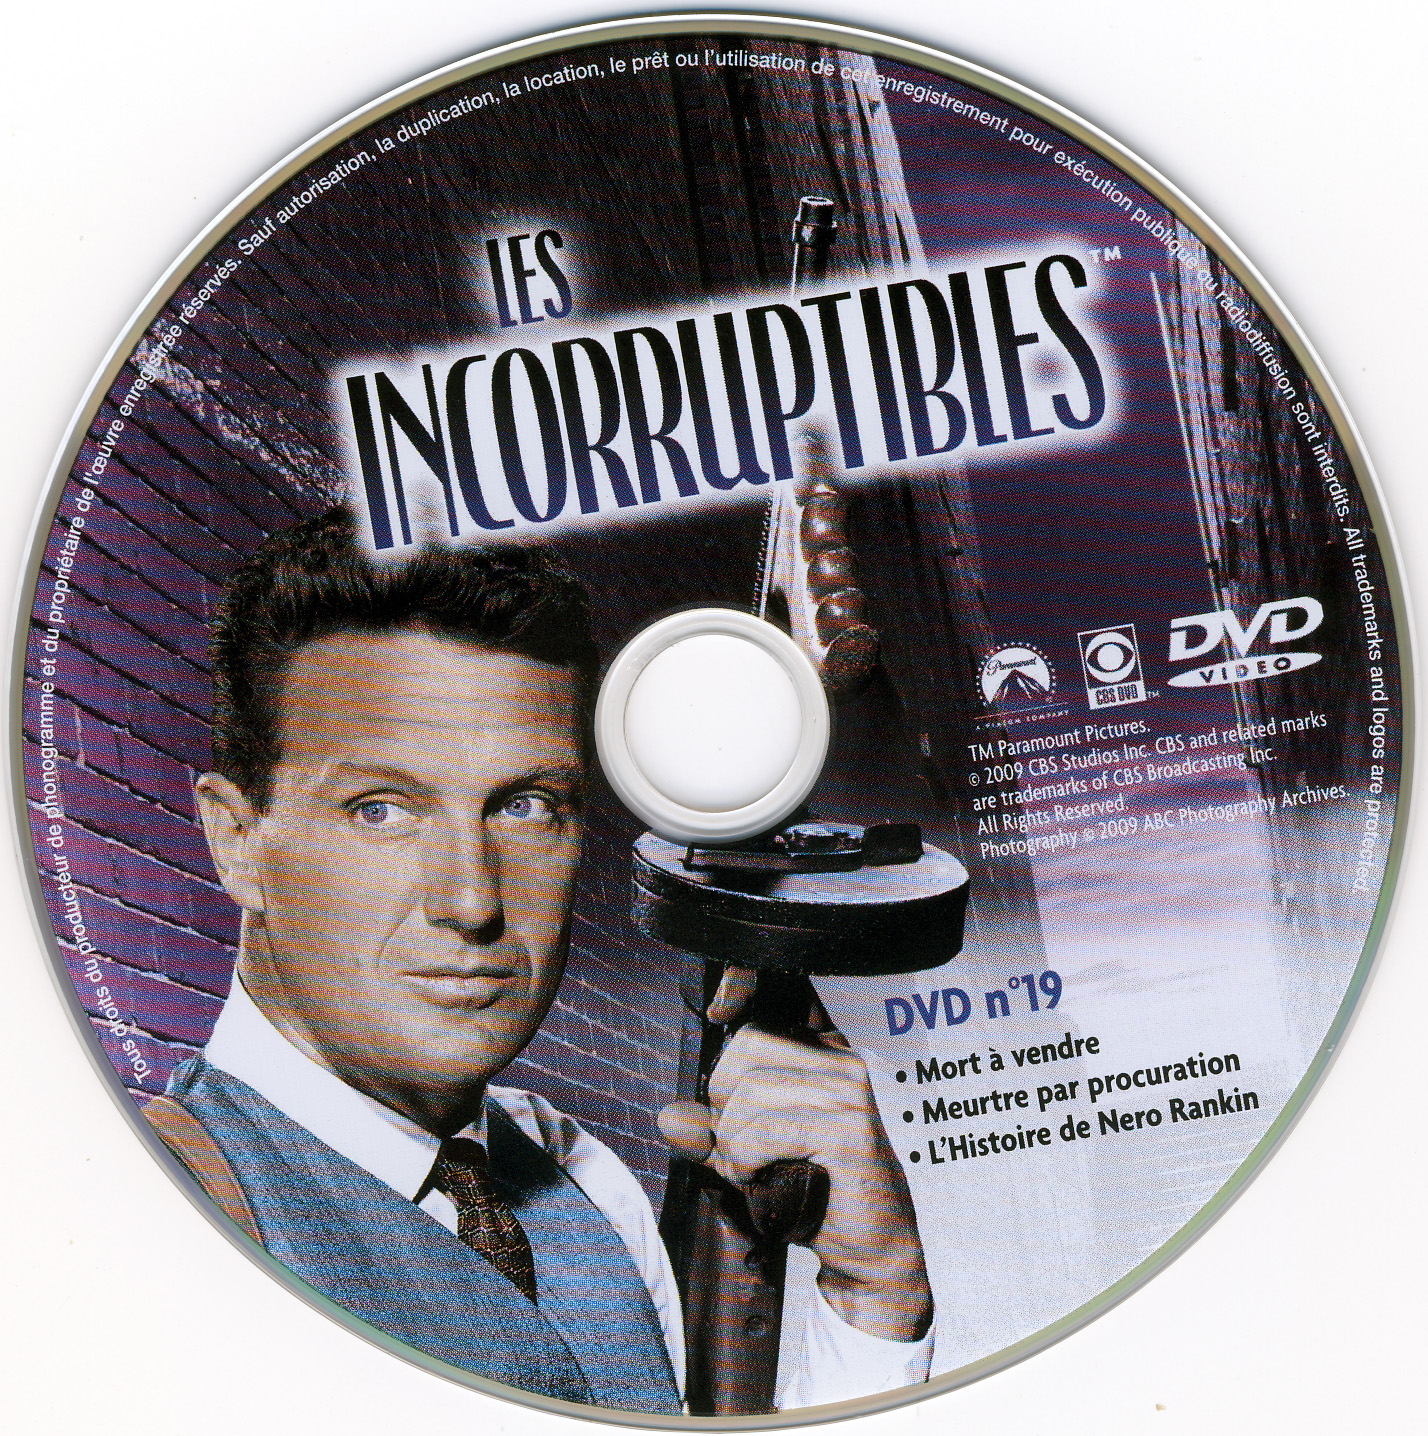 Les incorruptibles intgrale DVD 19